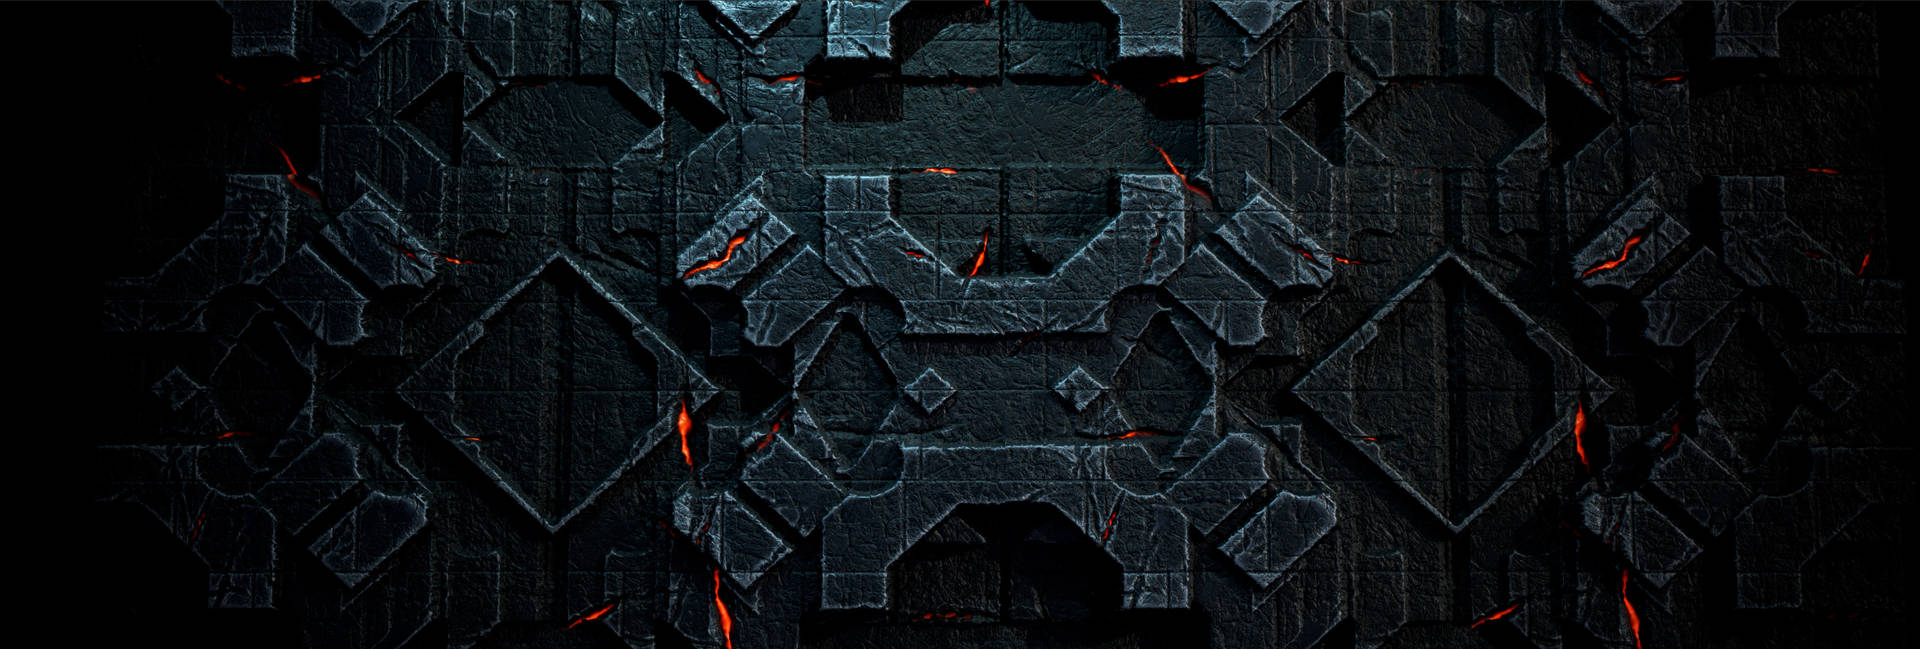 Volatil mørkefarvet væg med tekstur Wallpaper